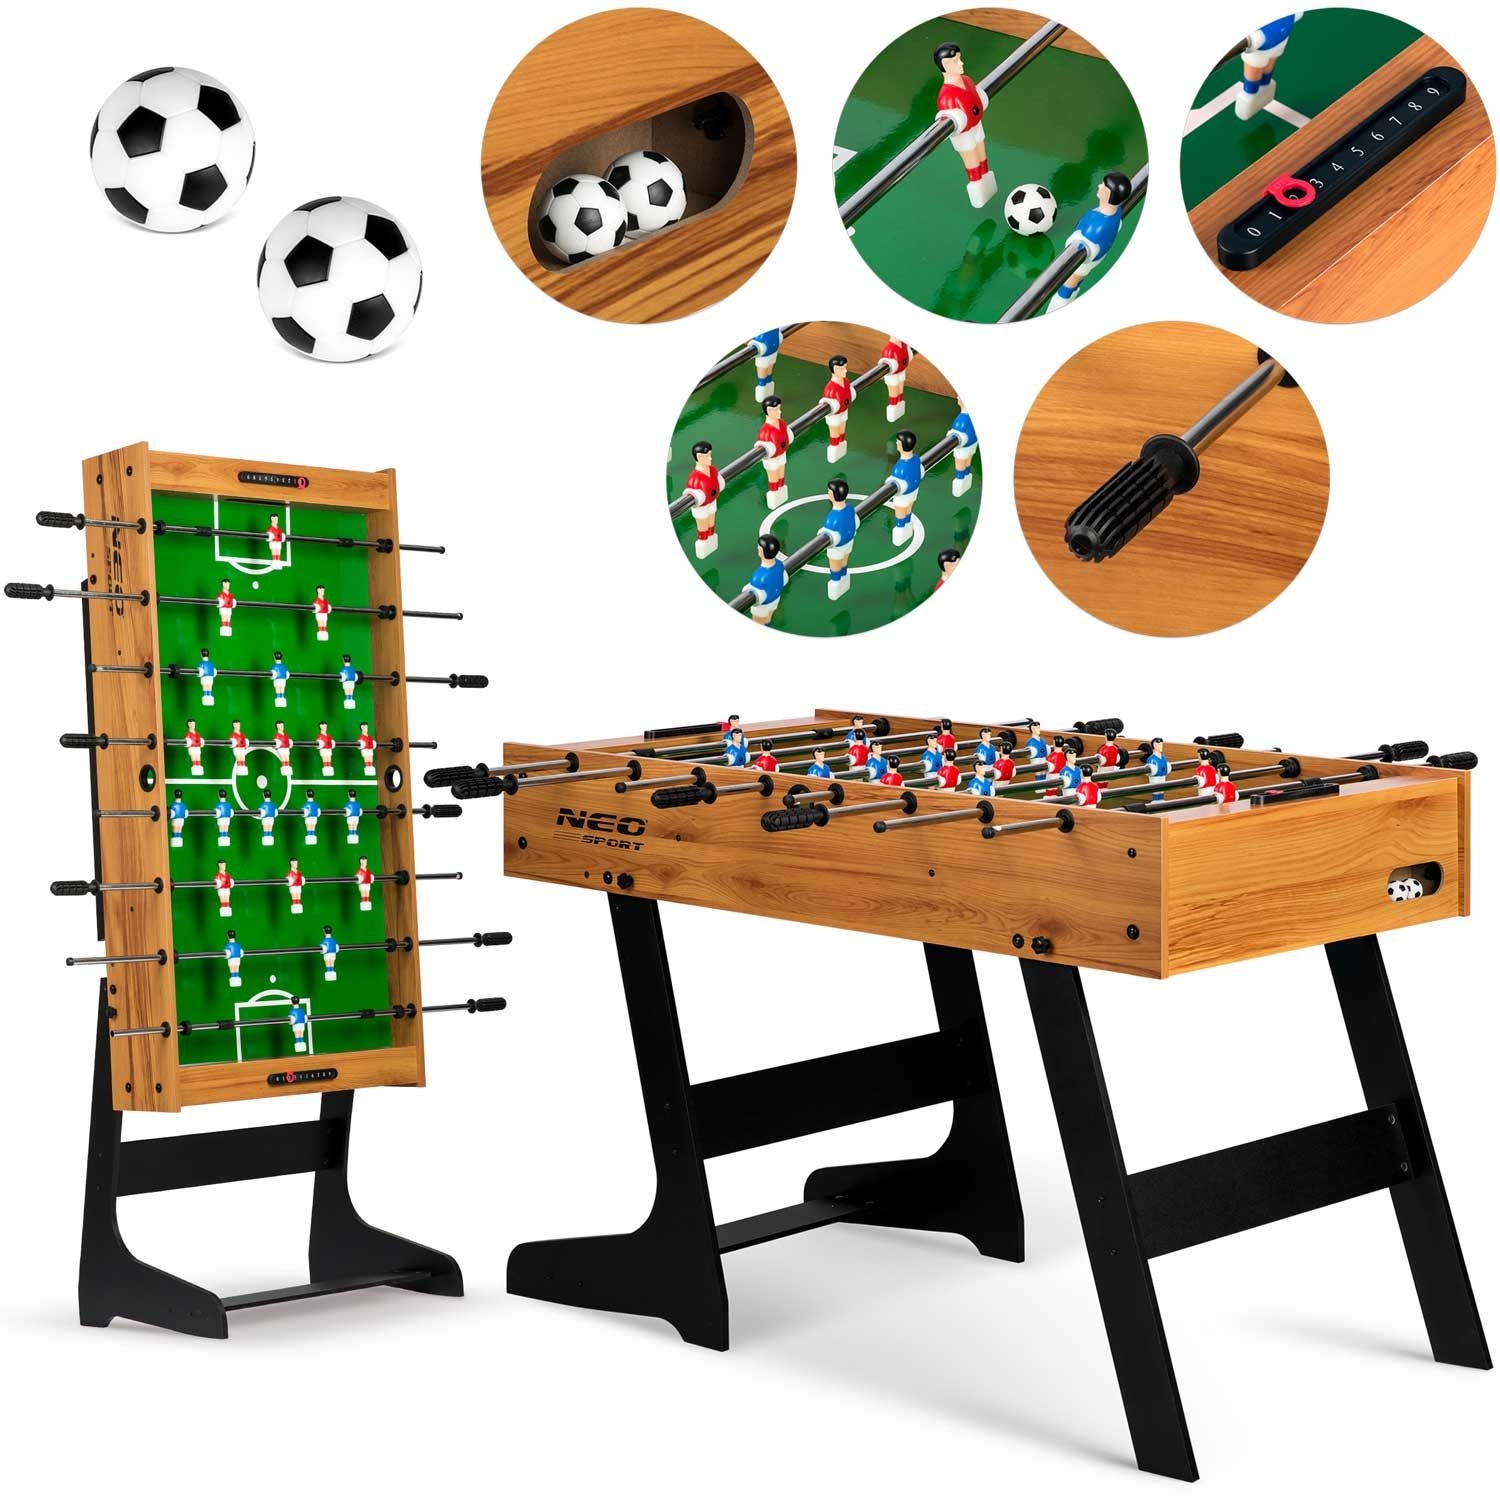 Фото - Ігровий стіл Neo-Sport Duży stół do gry w piłkarzyki, , 121x61x80 cm 